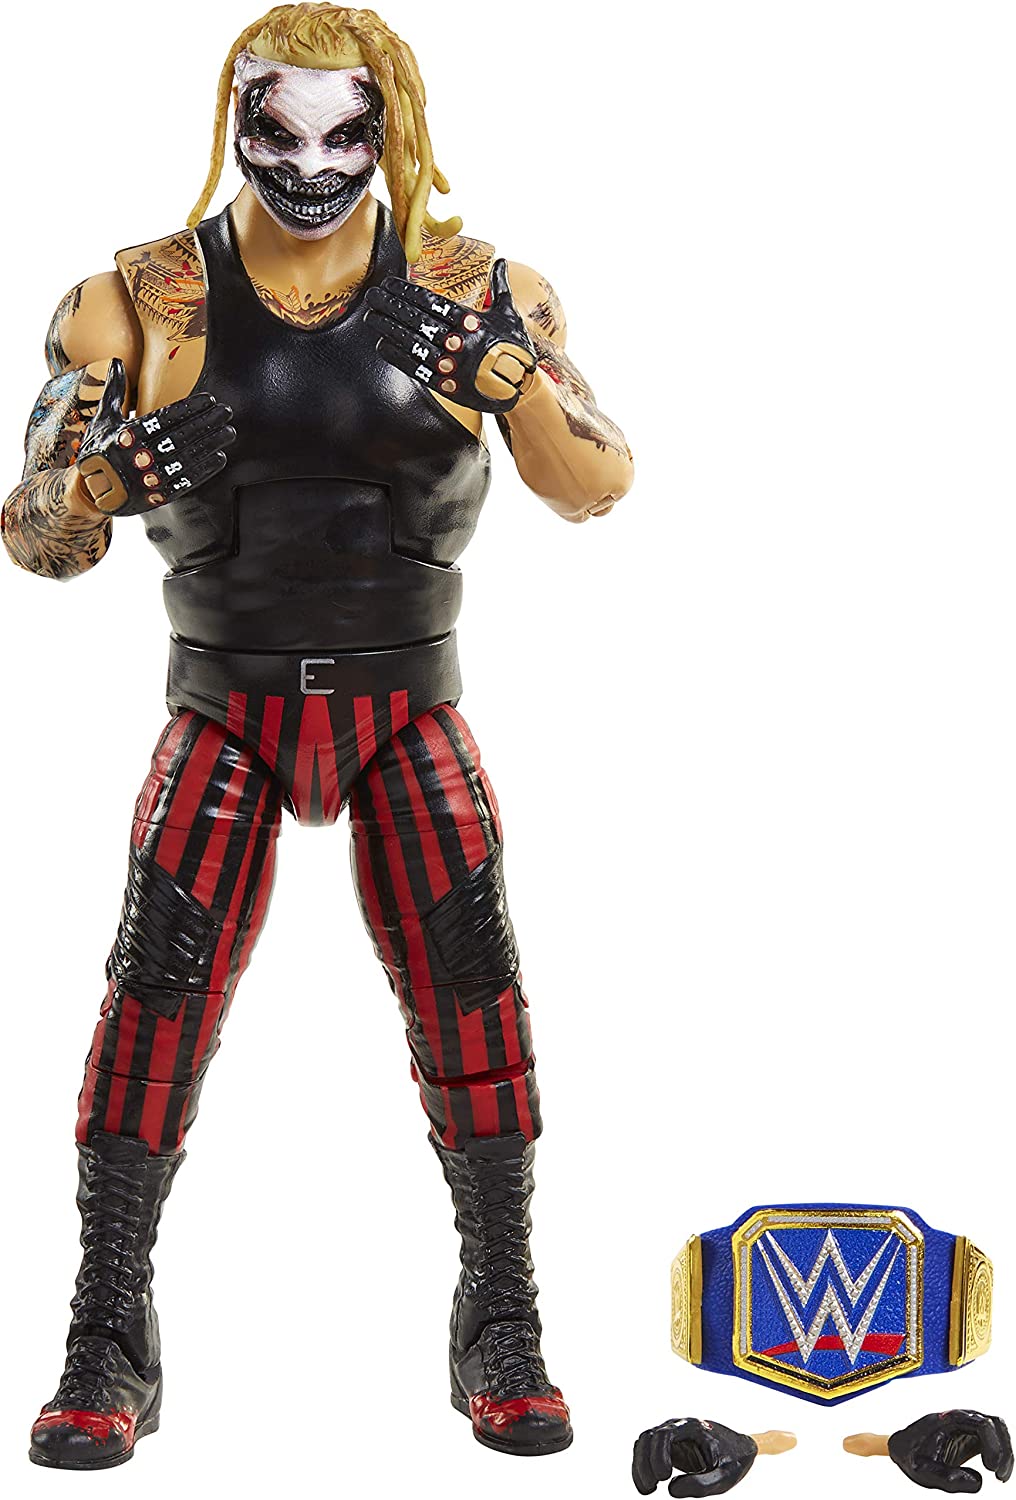 2021 WWE Mattel Elite Collection Series 86 "The Fiend" Bray Wyatt